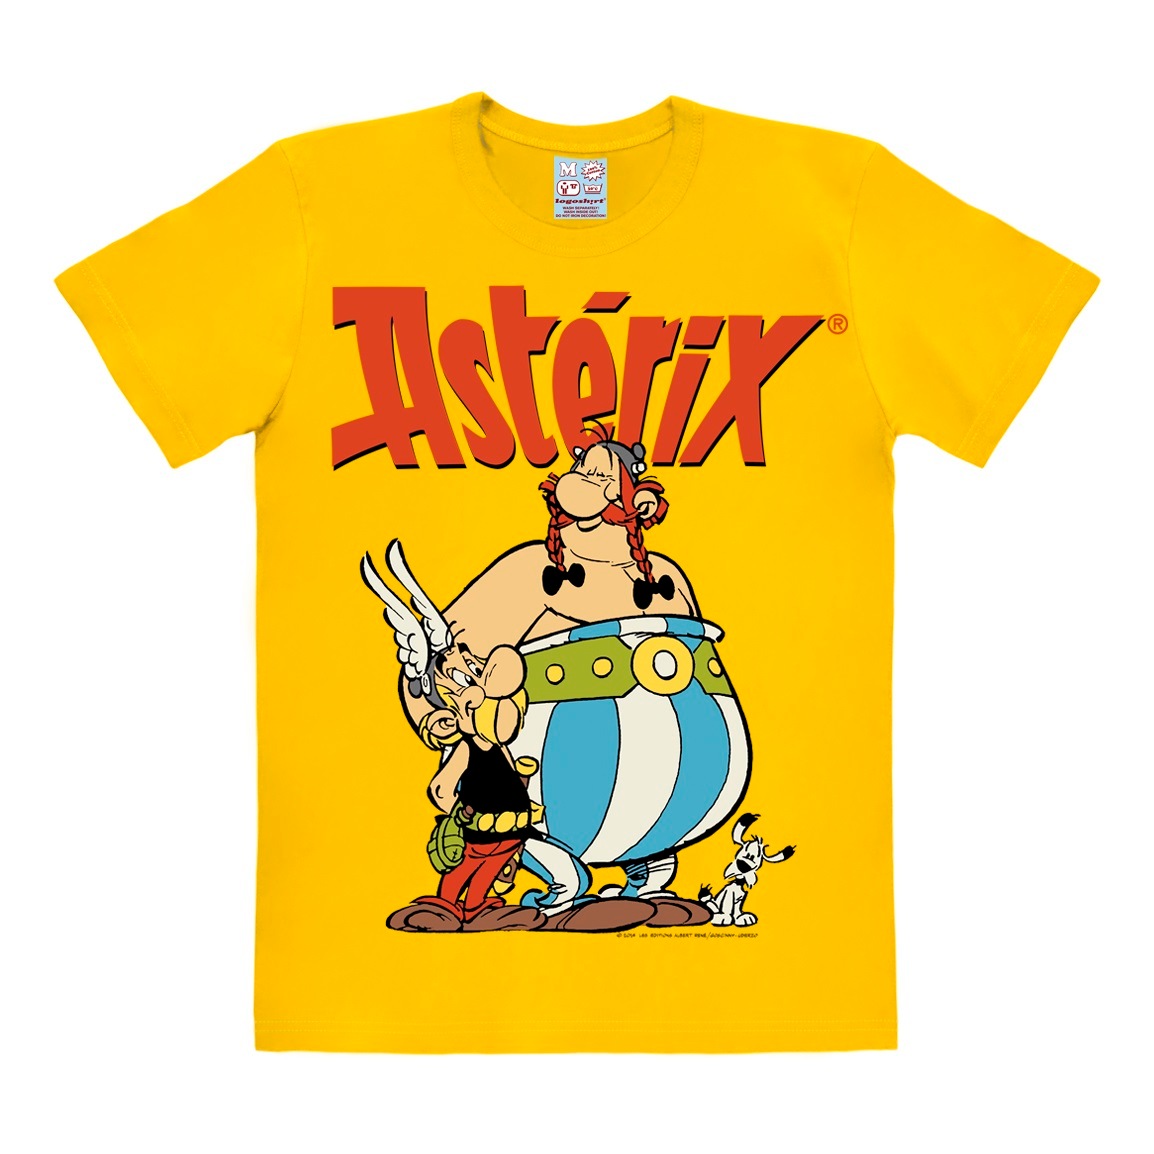 LOGOSHIRT T-Shirt »Asterix - Asterix & Obelix«, mit Comic Print